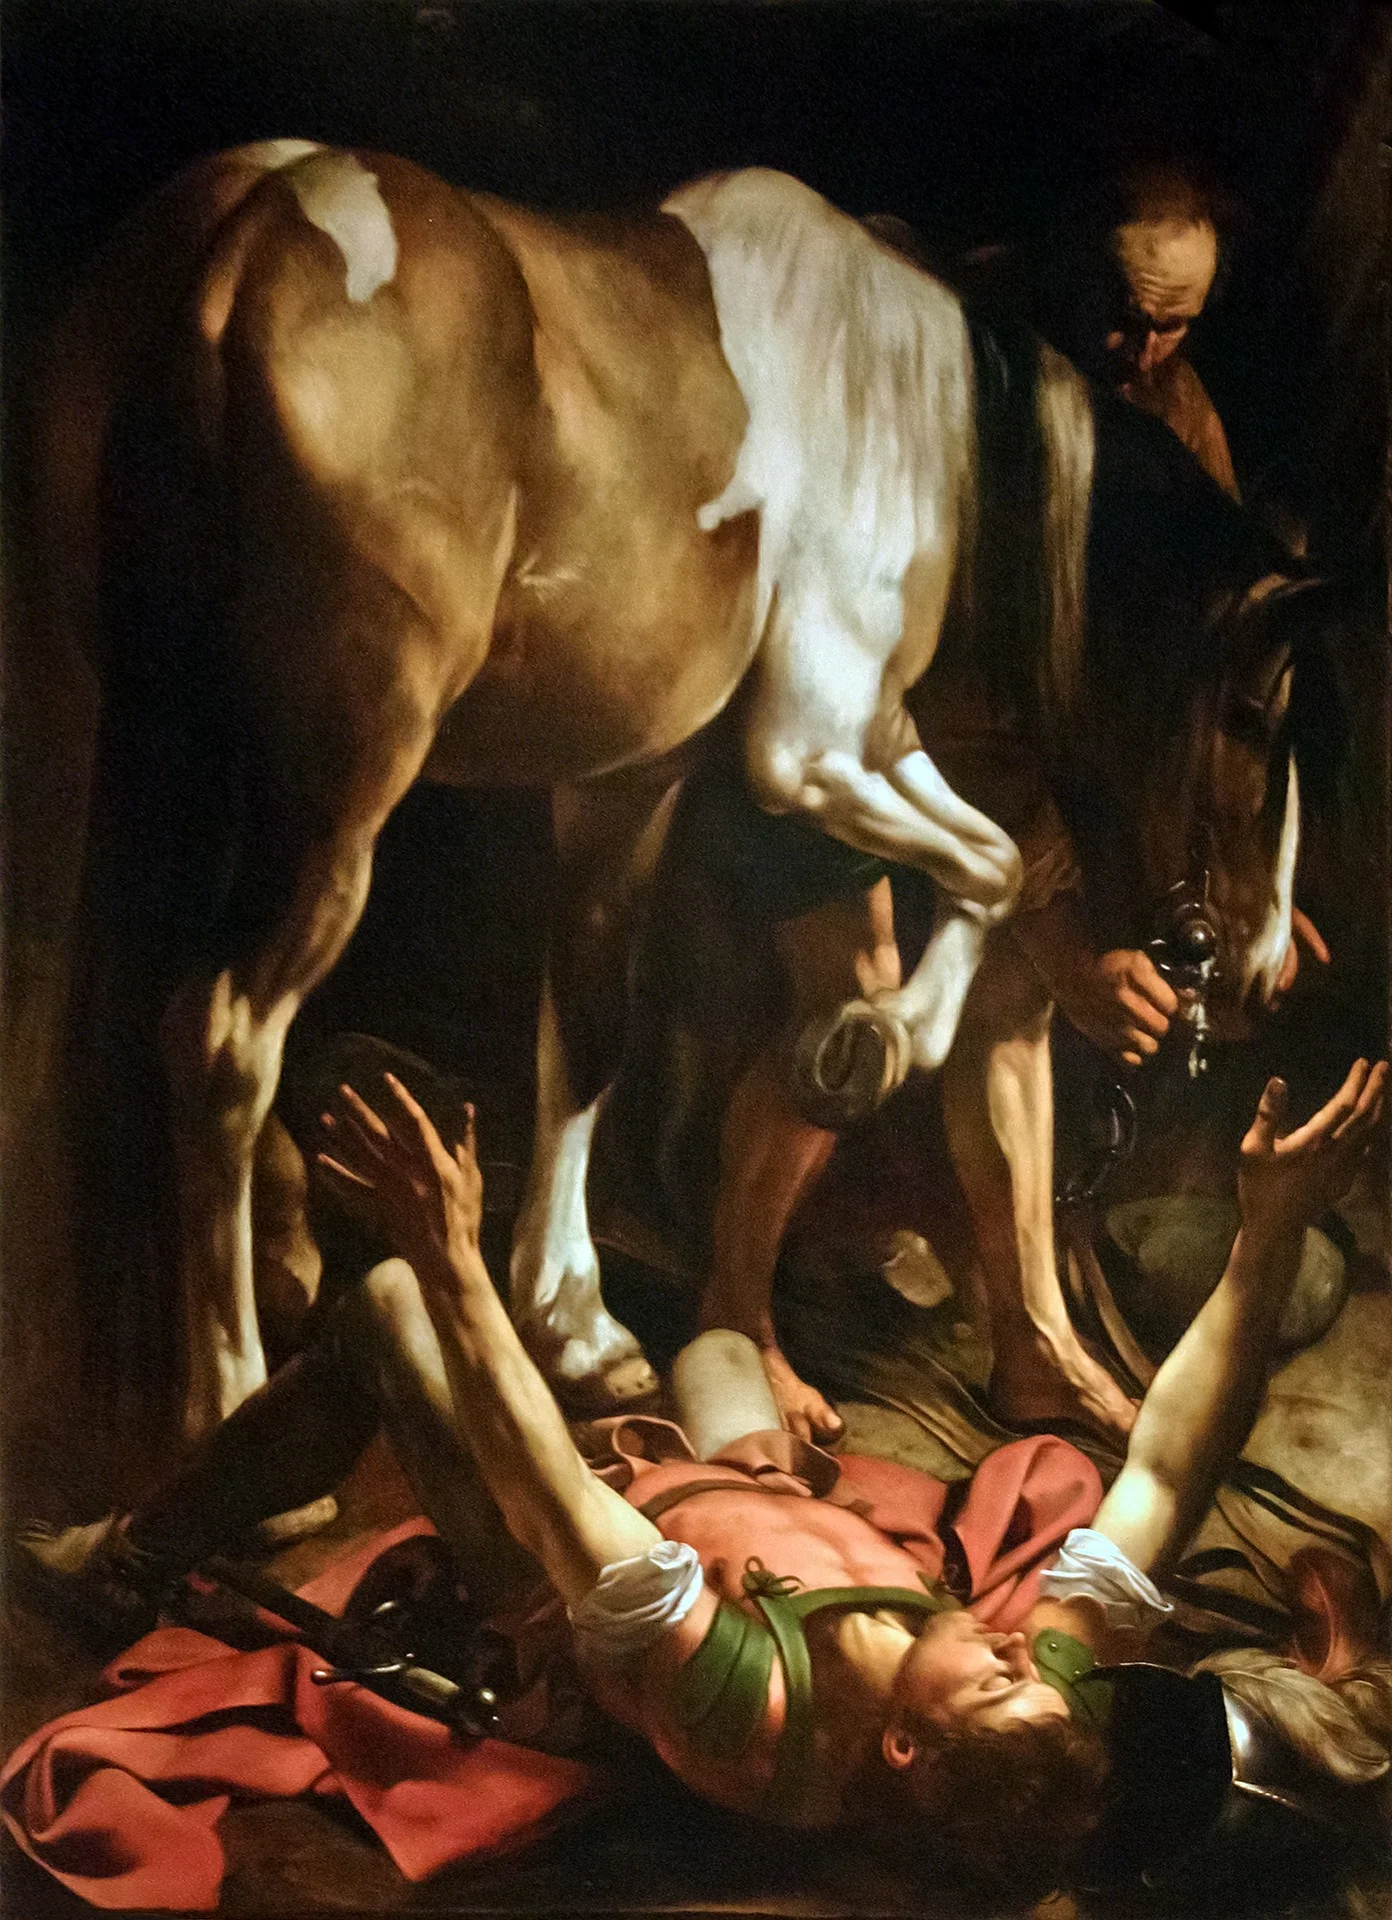 Pongan un cuadro en su vida - Página 9 Caravaggio-en-Santa-Maria-del-Popolo